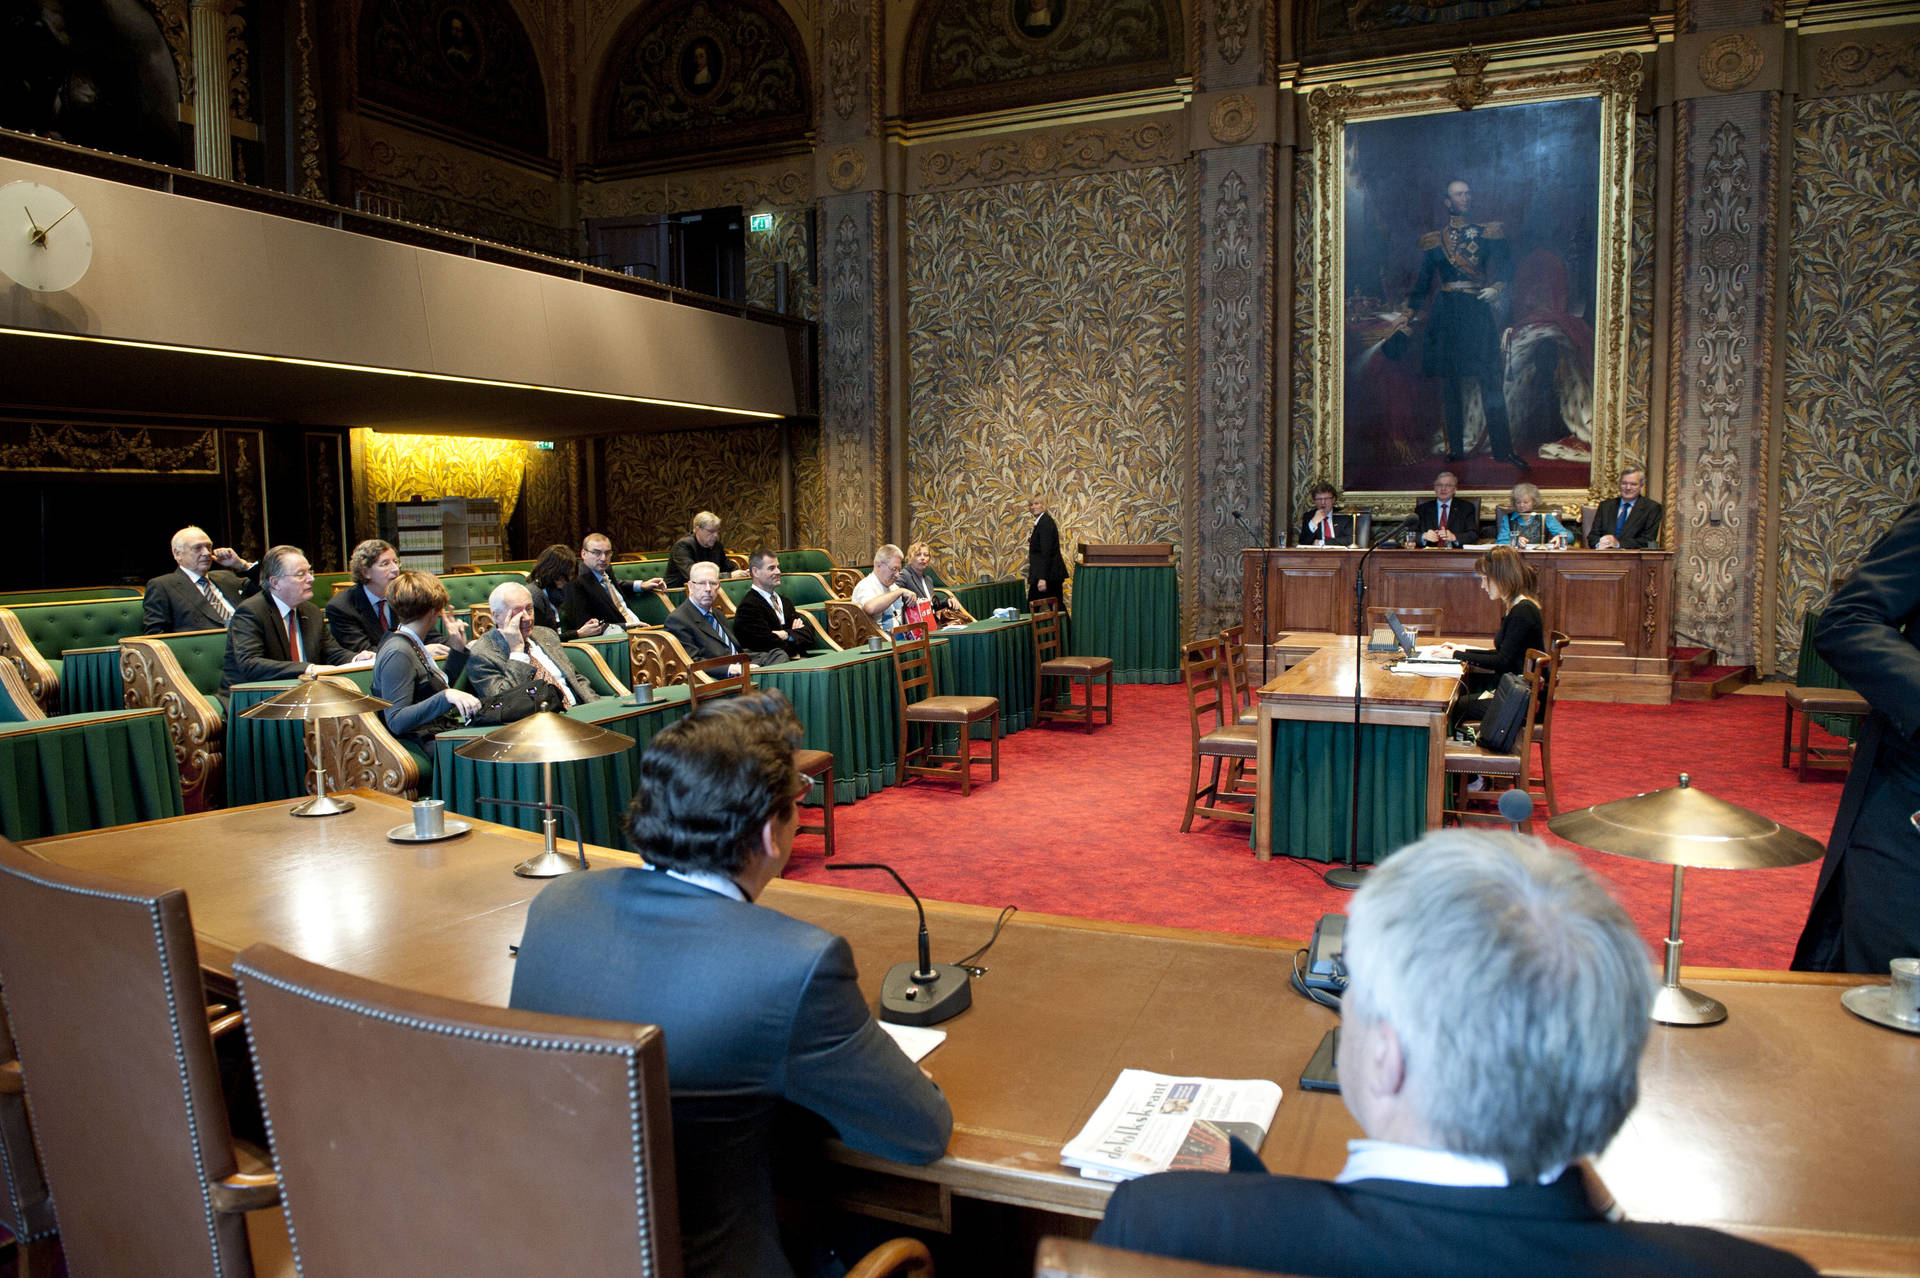 Bezoek Provincie Utrecht debat in plenaire zaal